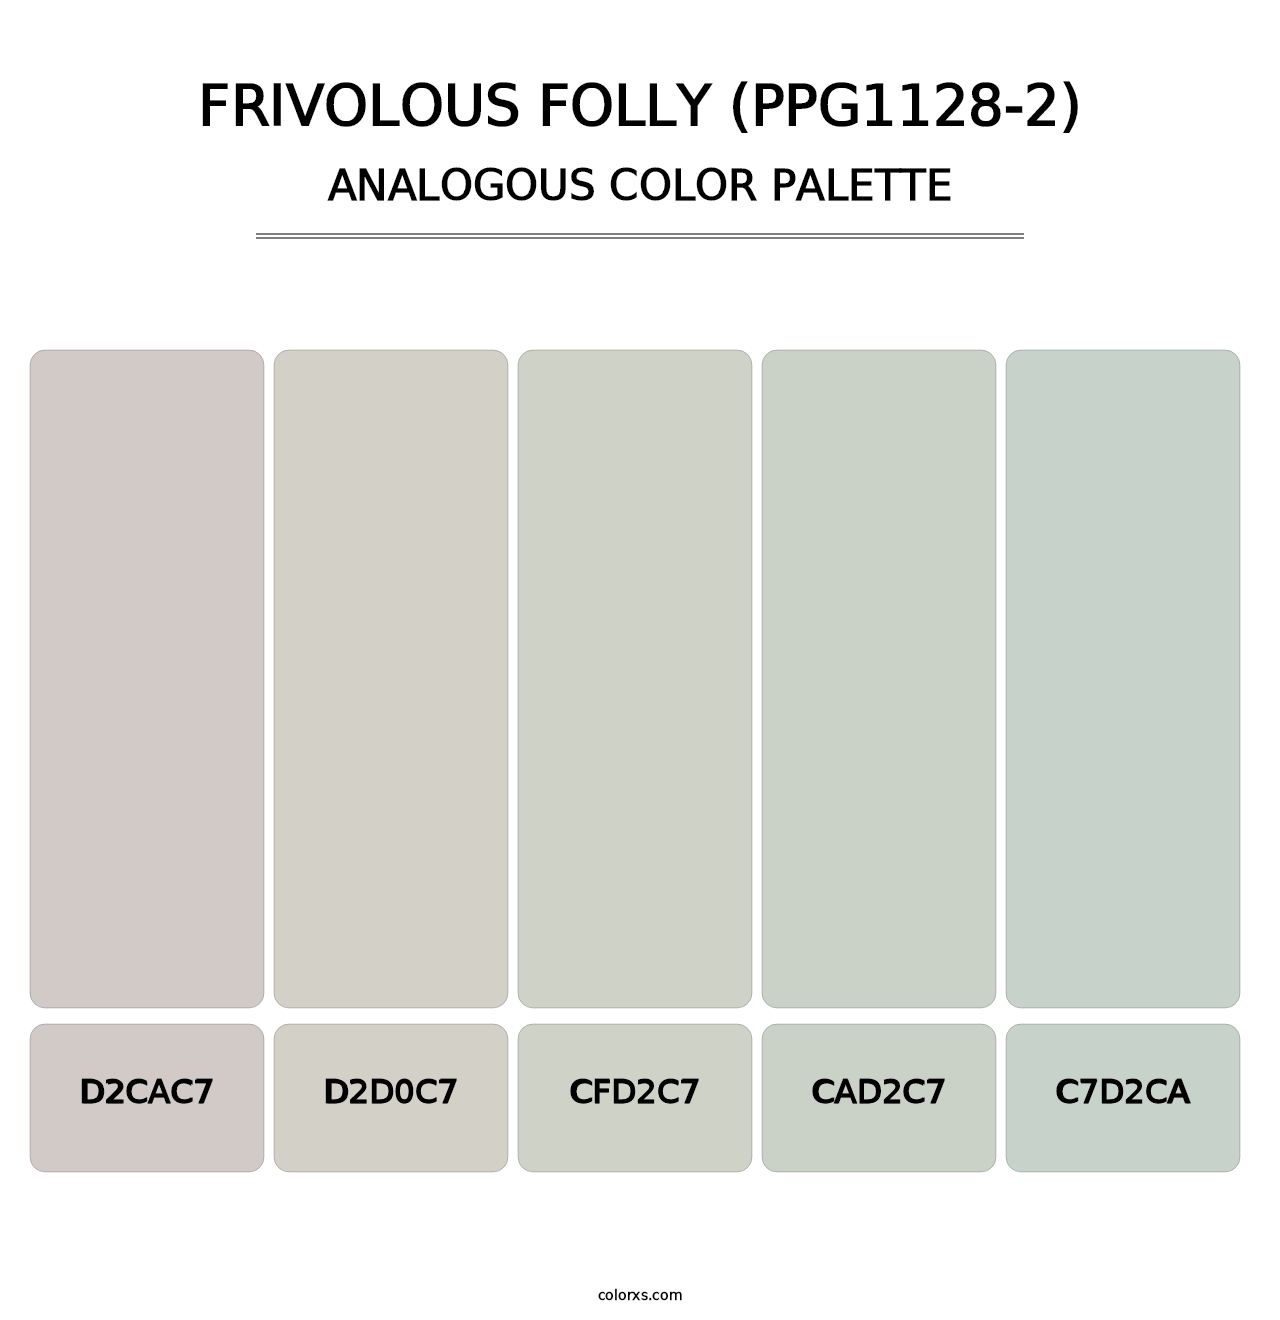 Frivolous Folly (PPG1128-2) - Analogous Color Palette